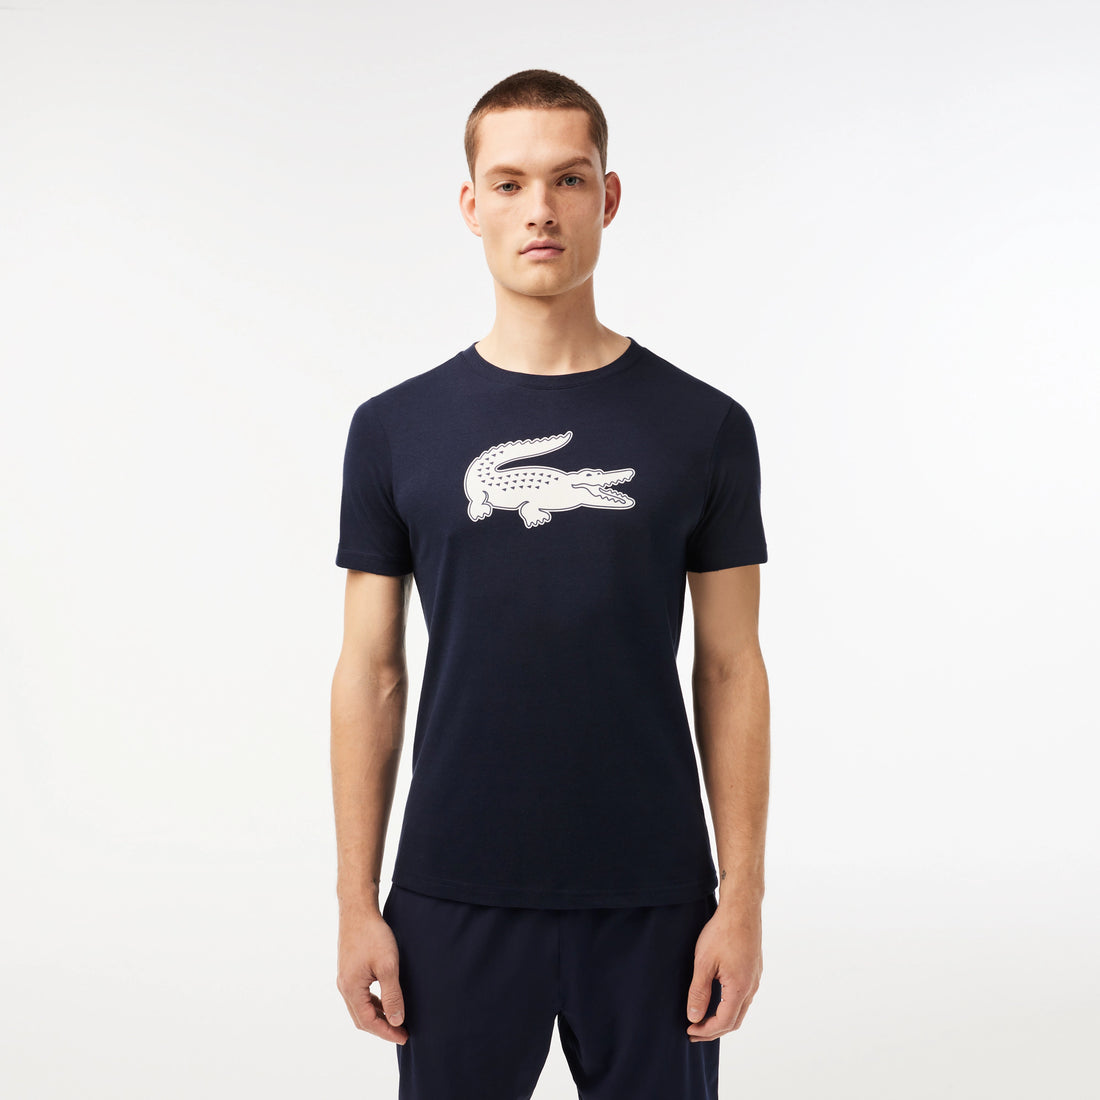 Lacoste TH2042-51 Men's Croc Jersey T-shirt [Navy Blue/White]